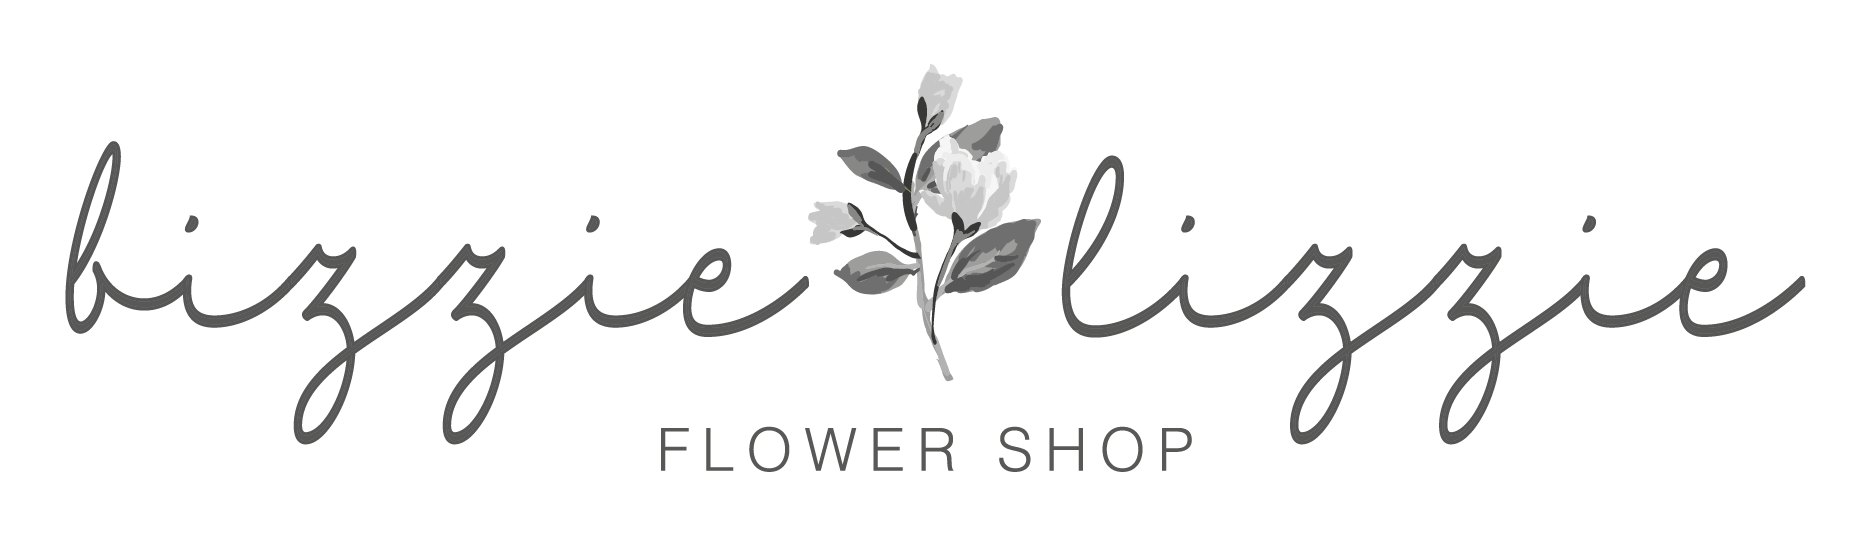 Bizzie Lizzie Flower Shop - Logo